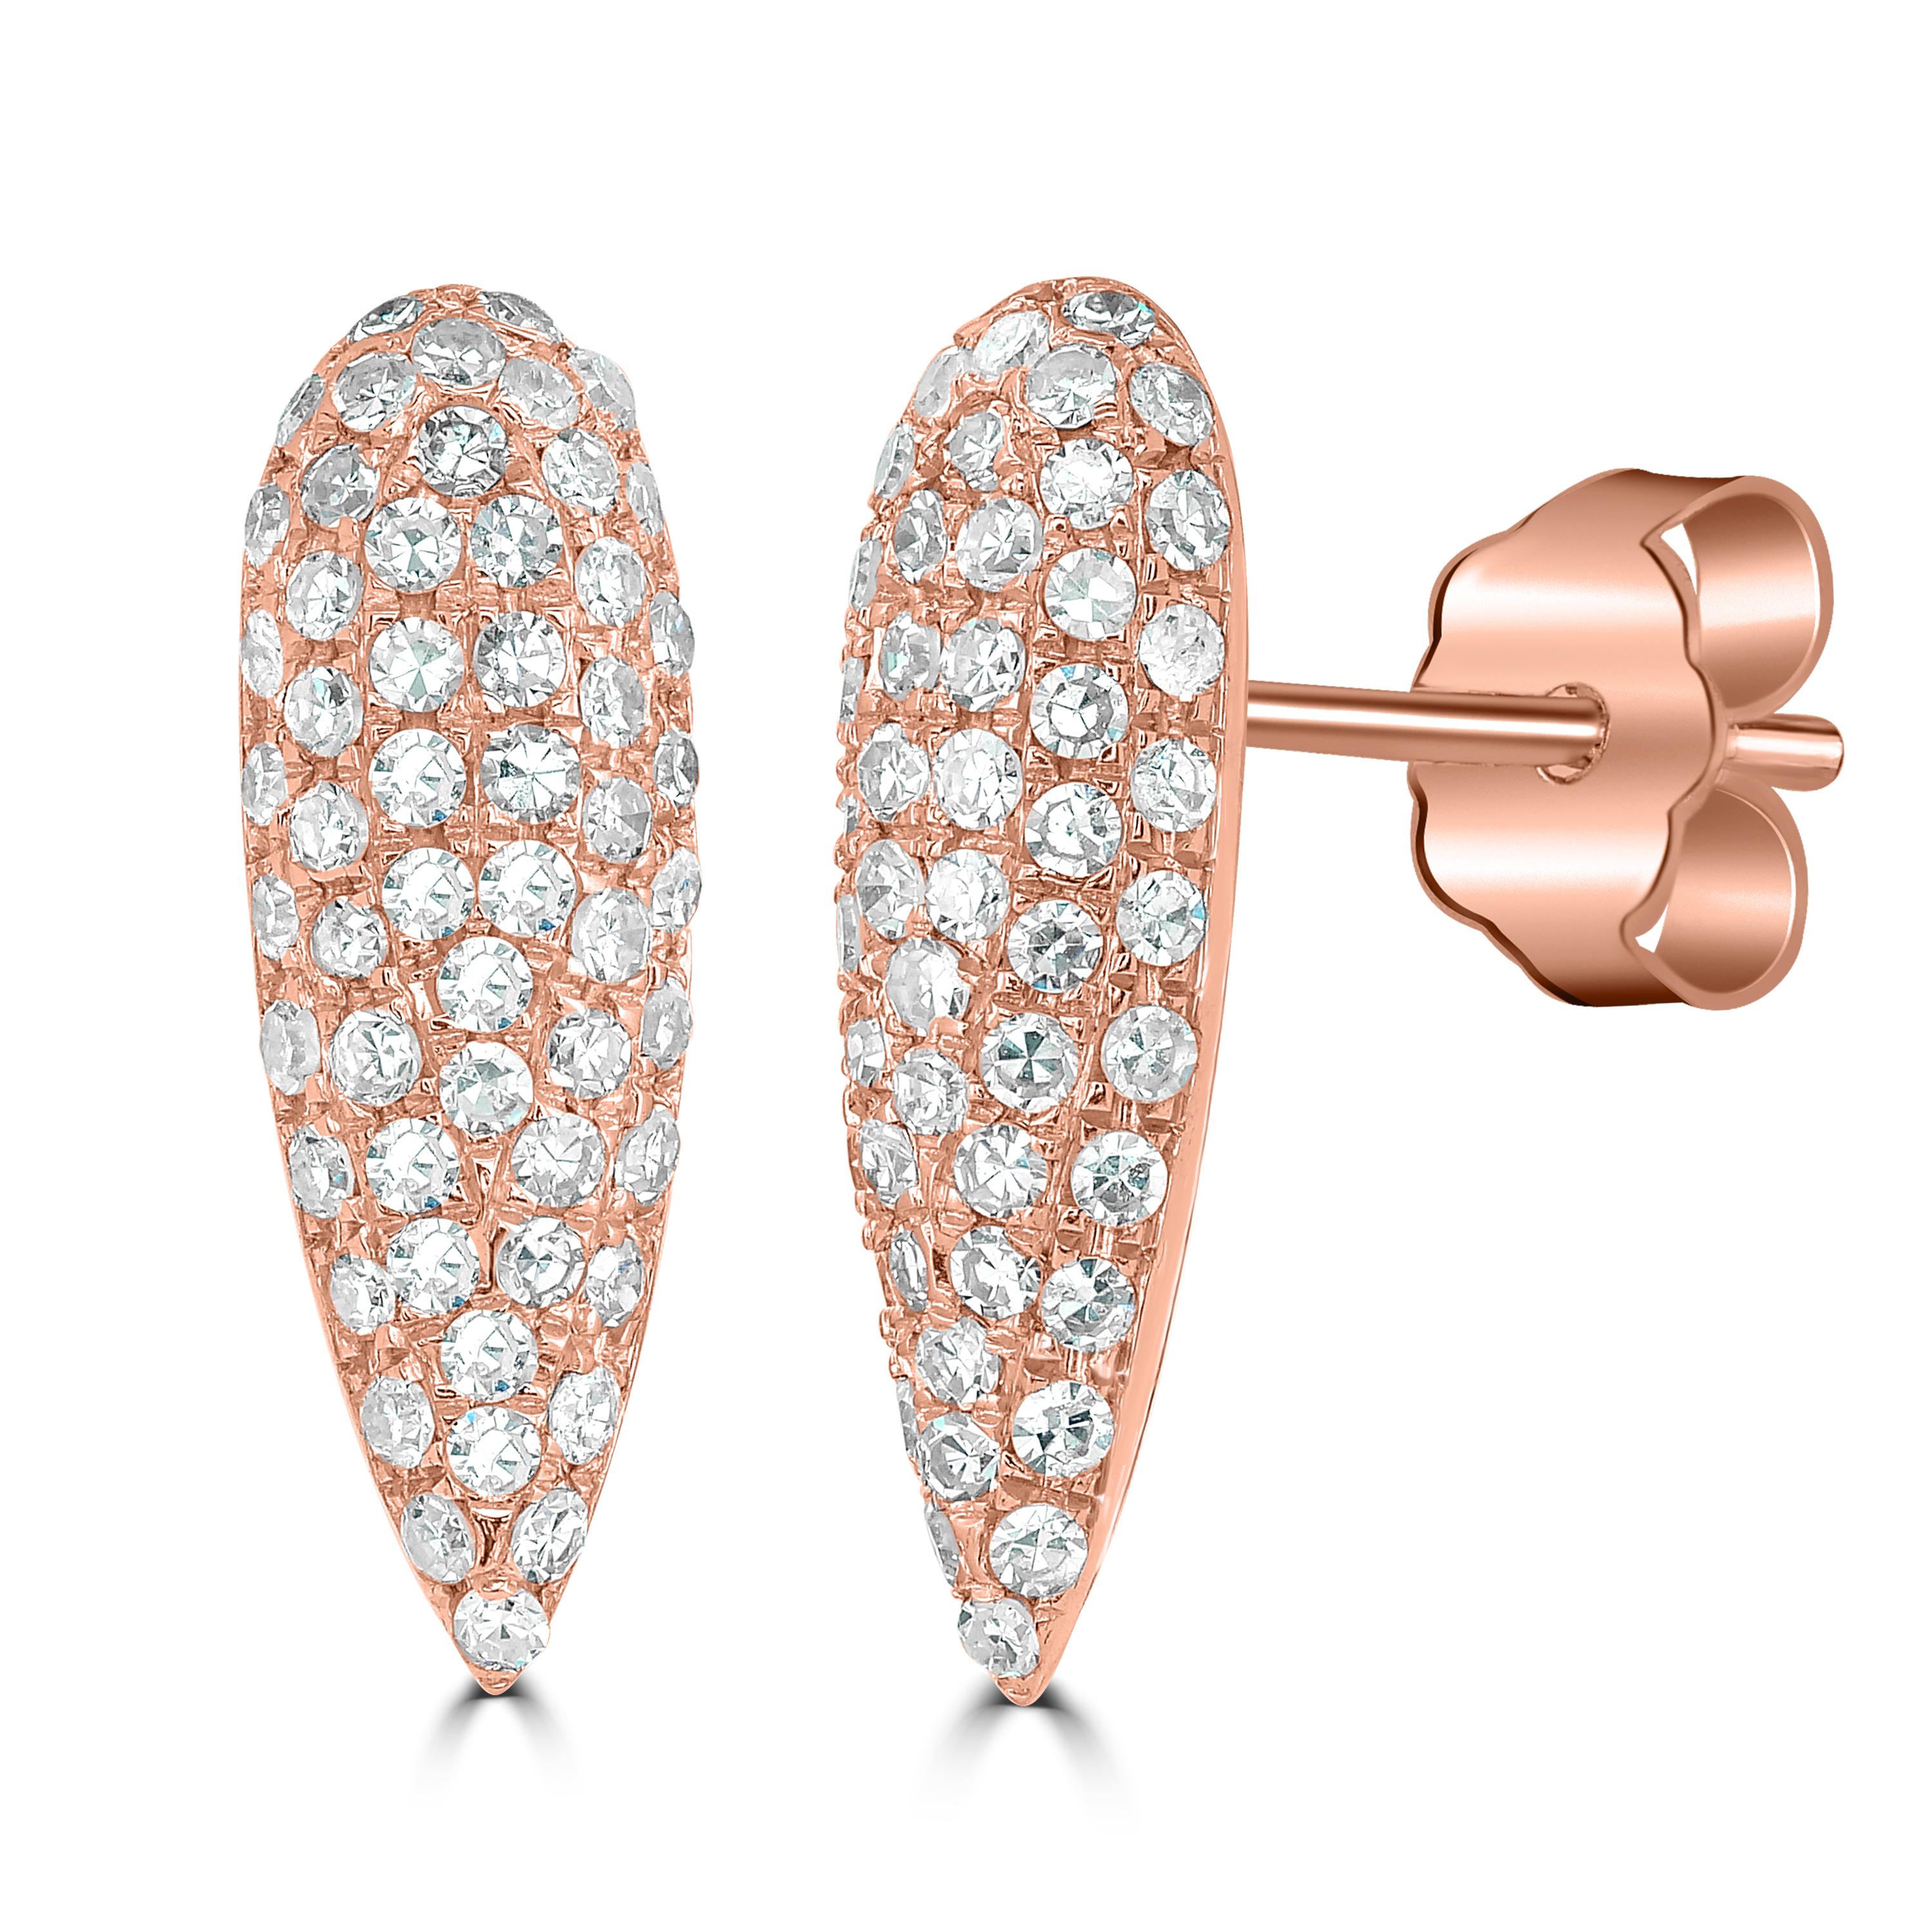 Une paire unique de clous d'oreilles Luxle, ornés de diamants ronds sertis en pavage dans un design dramatique en forme de goutte d'eau en or rose 14 carats, apportera certainement une touche de paillettes et de glamour à tout ensemble.

Suivez la